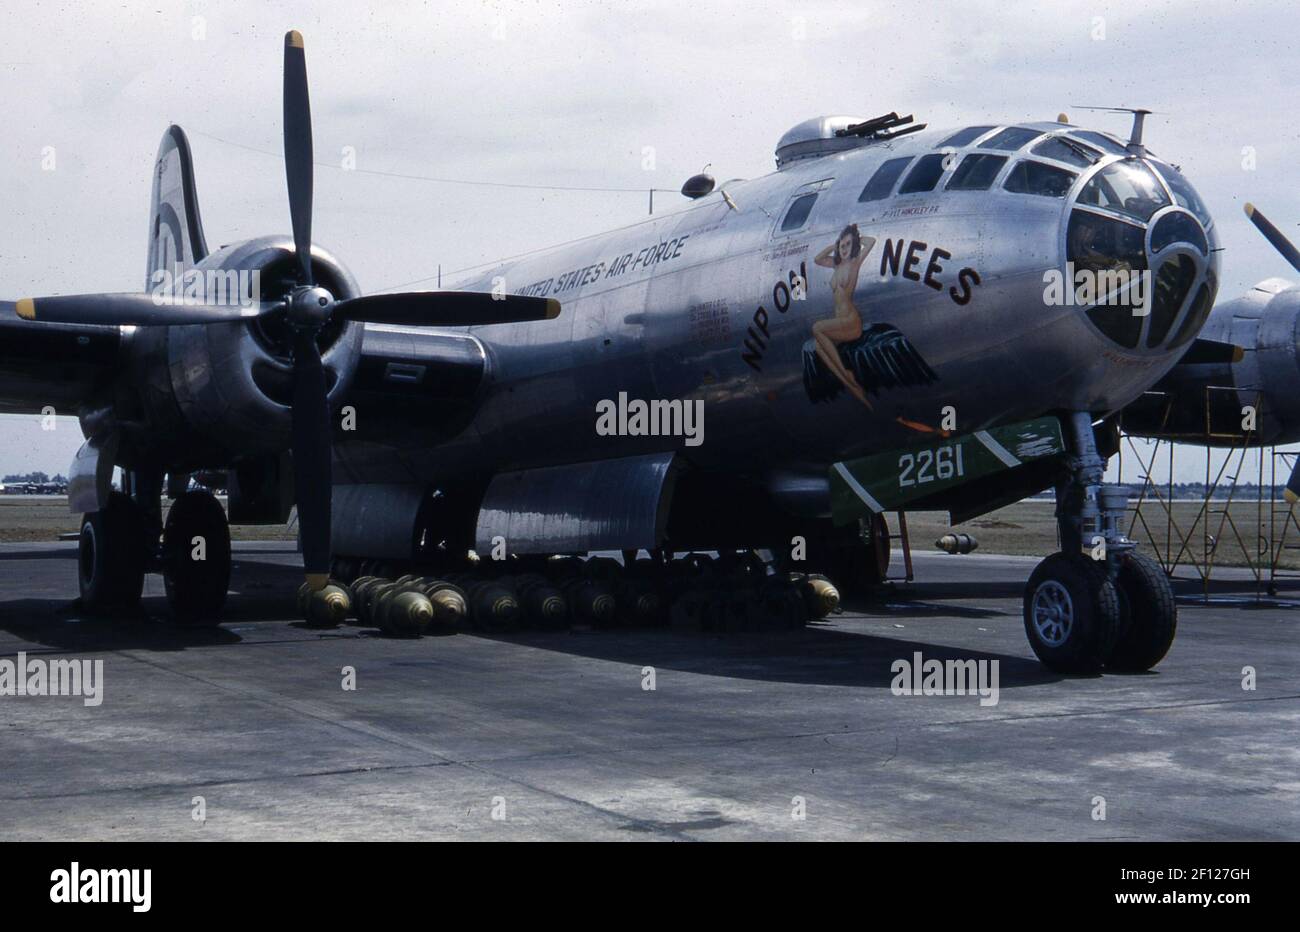 Vista frontale di tre quarti a destra della Superfortilizio Boeing B-29 con bombe sotto l'aereo. L'arte del naso include il nickname con disegno, 'nip on Nees.' Foto Stock